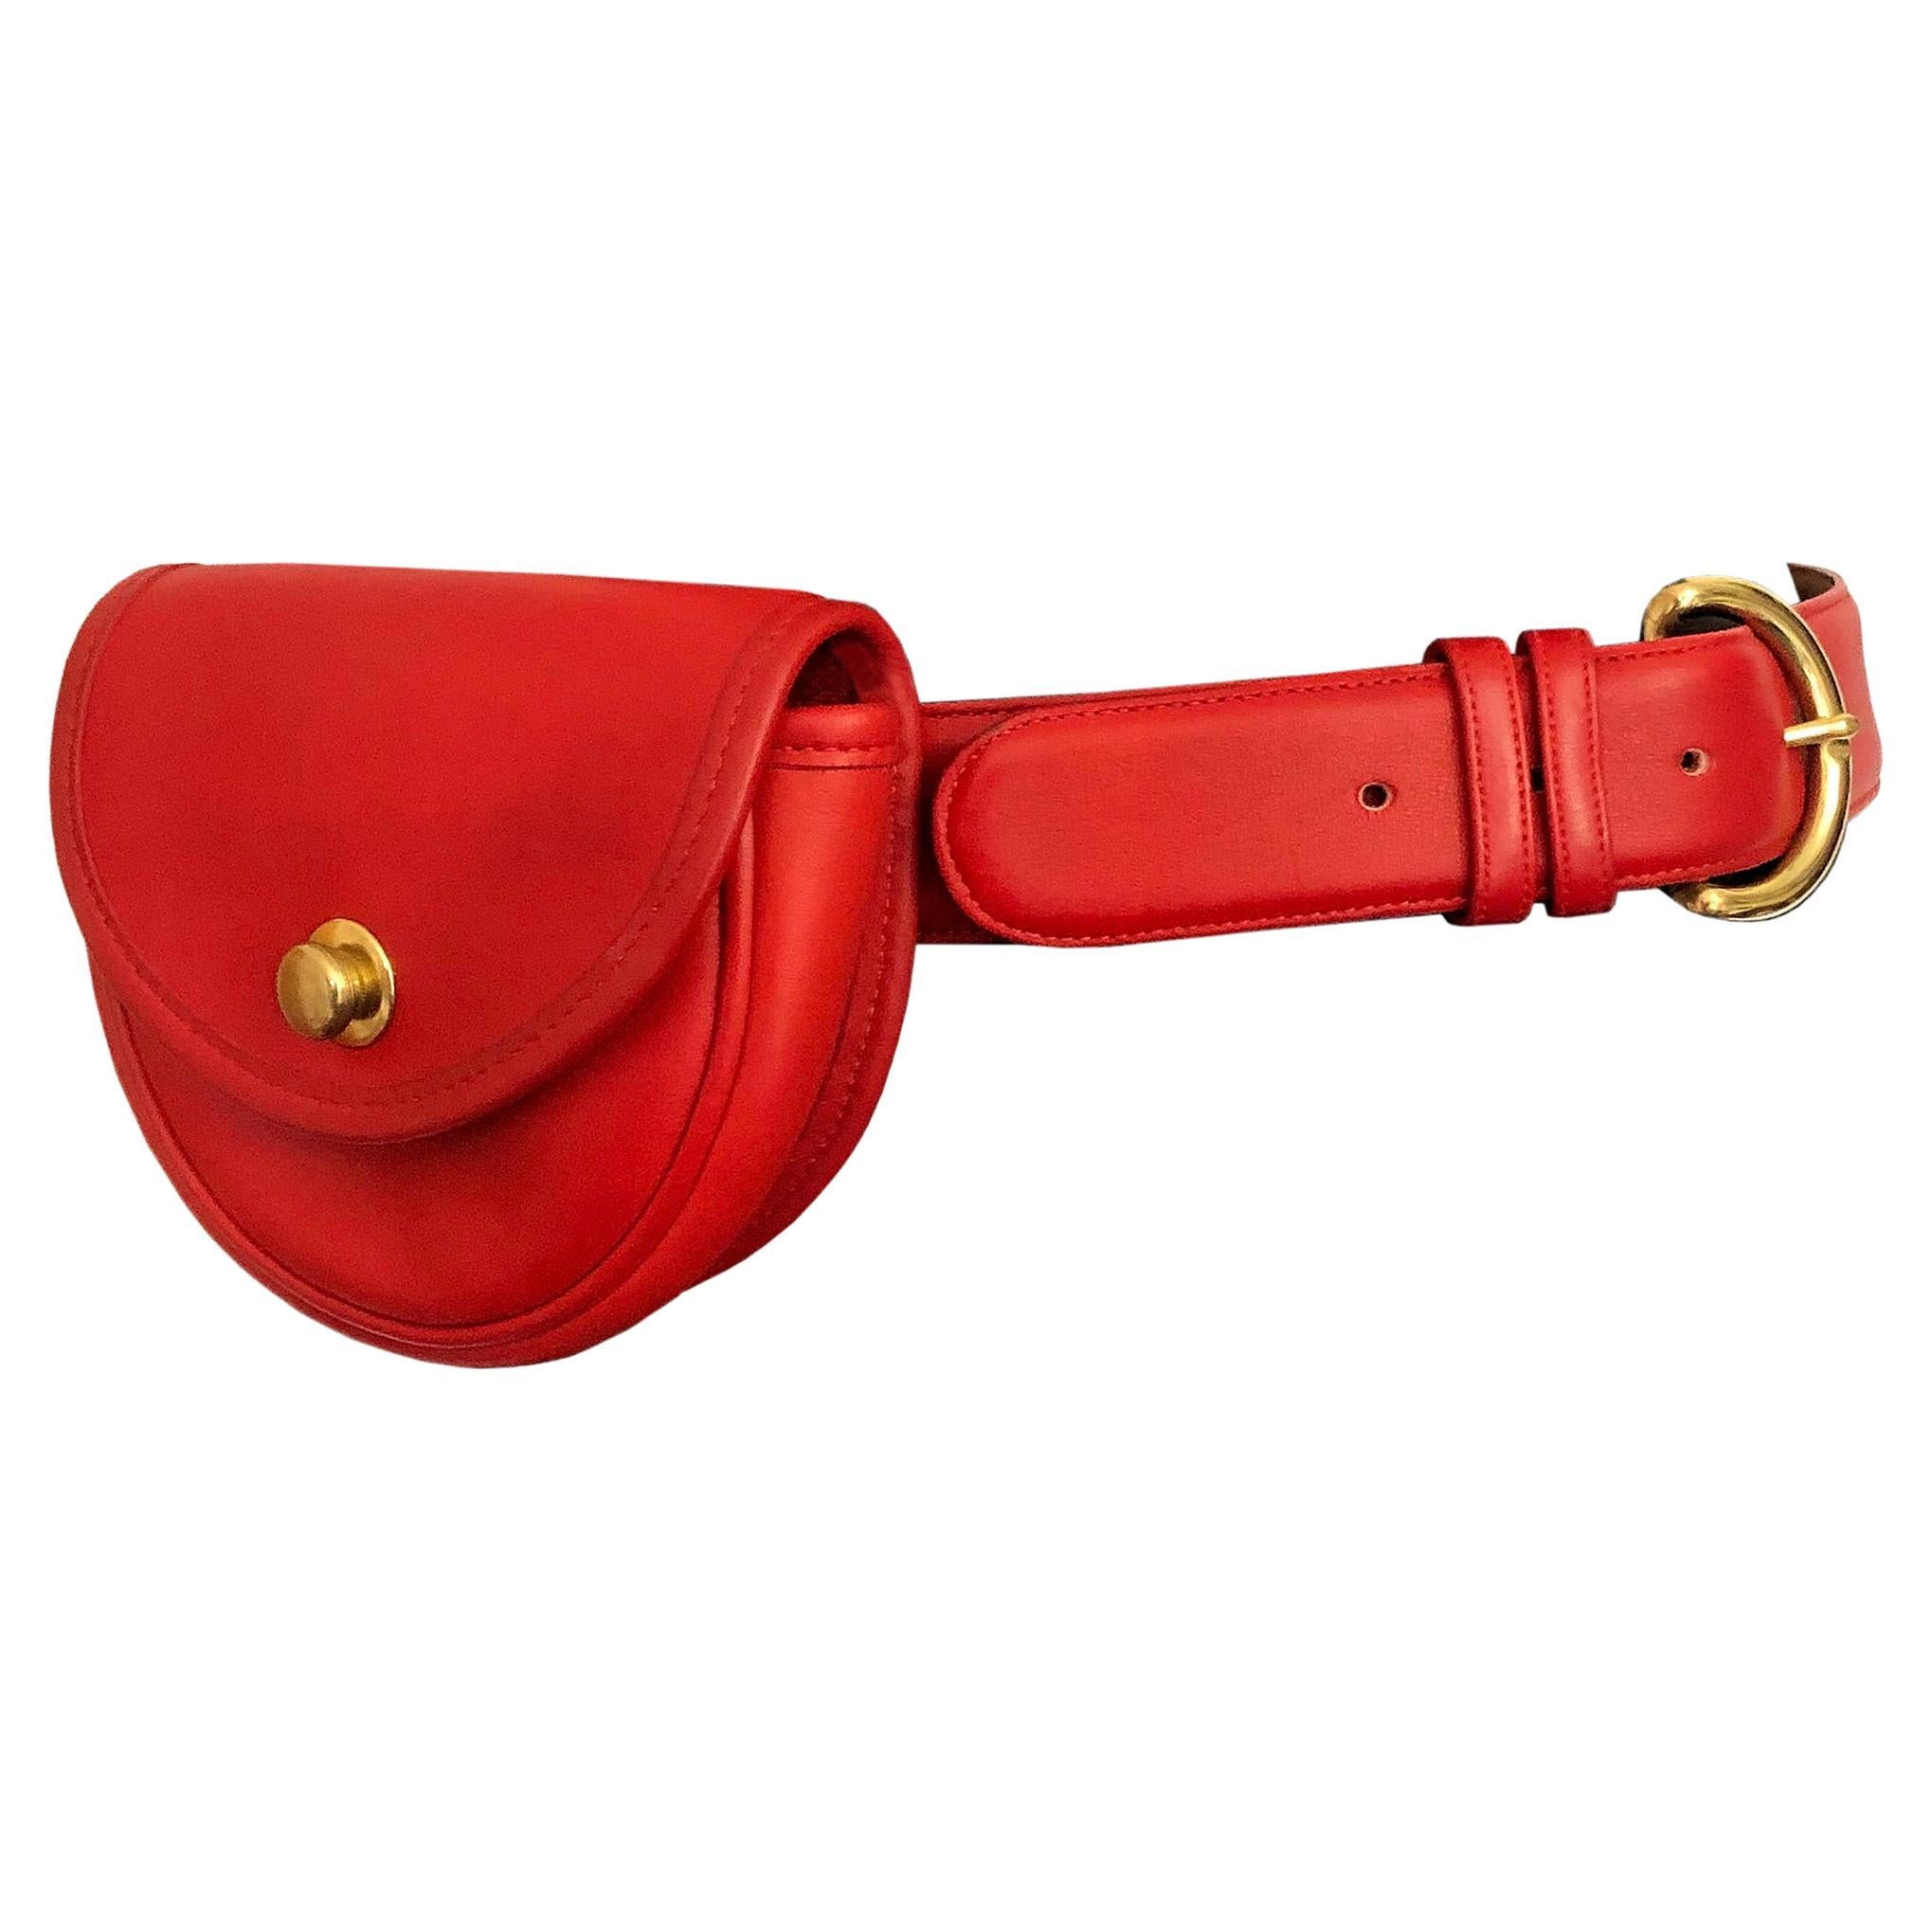 Coach - 1980s Vintage - Bag + Belt Bag Set - Red Leather - Worn Two-Ways  For Sale